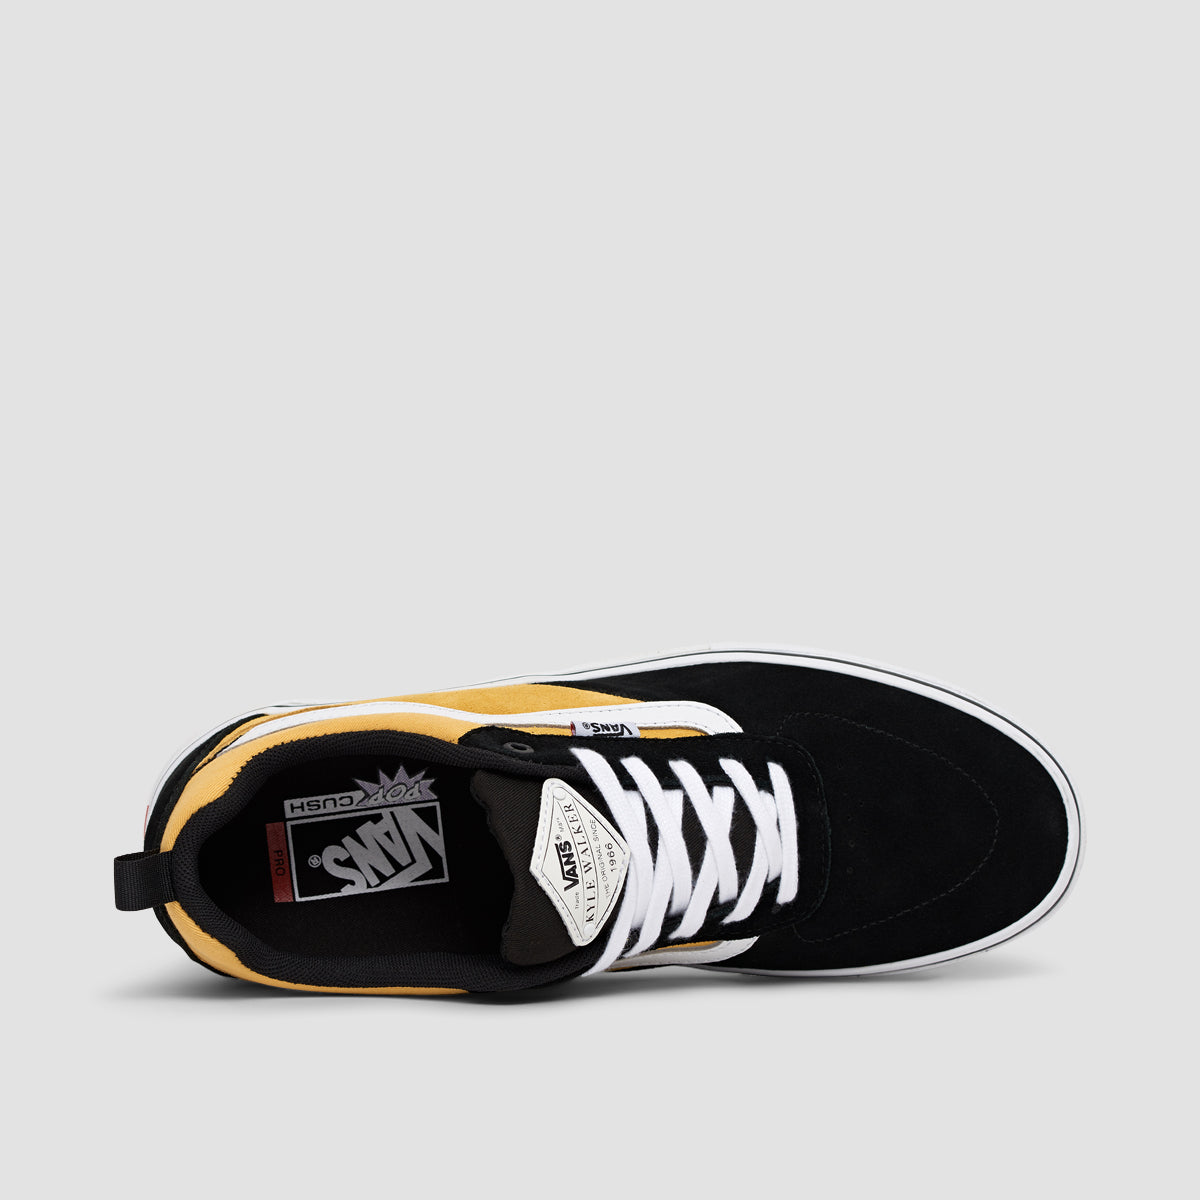 Vans Kyle Walker Pro Shoes - Gold/Black